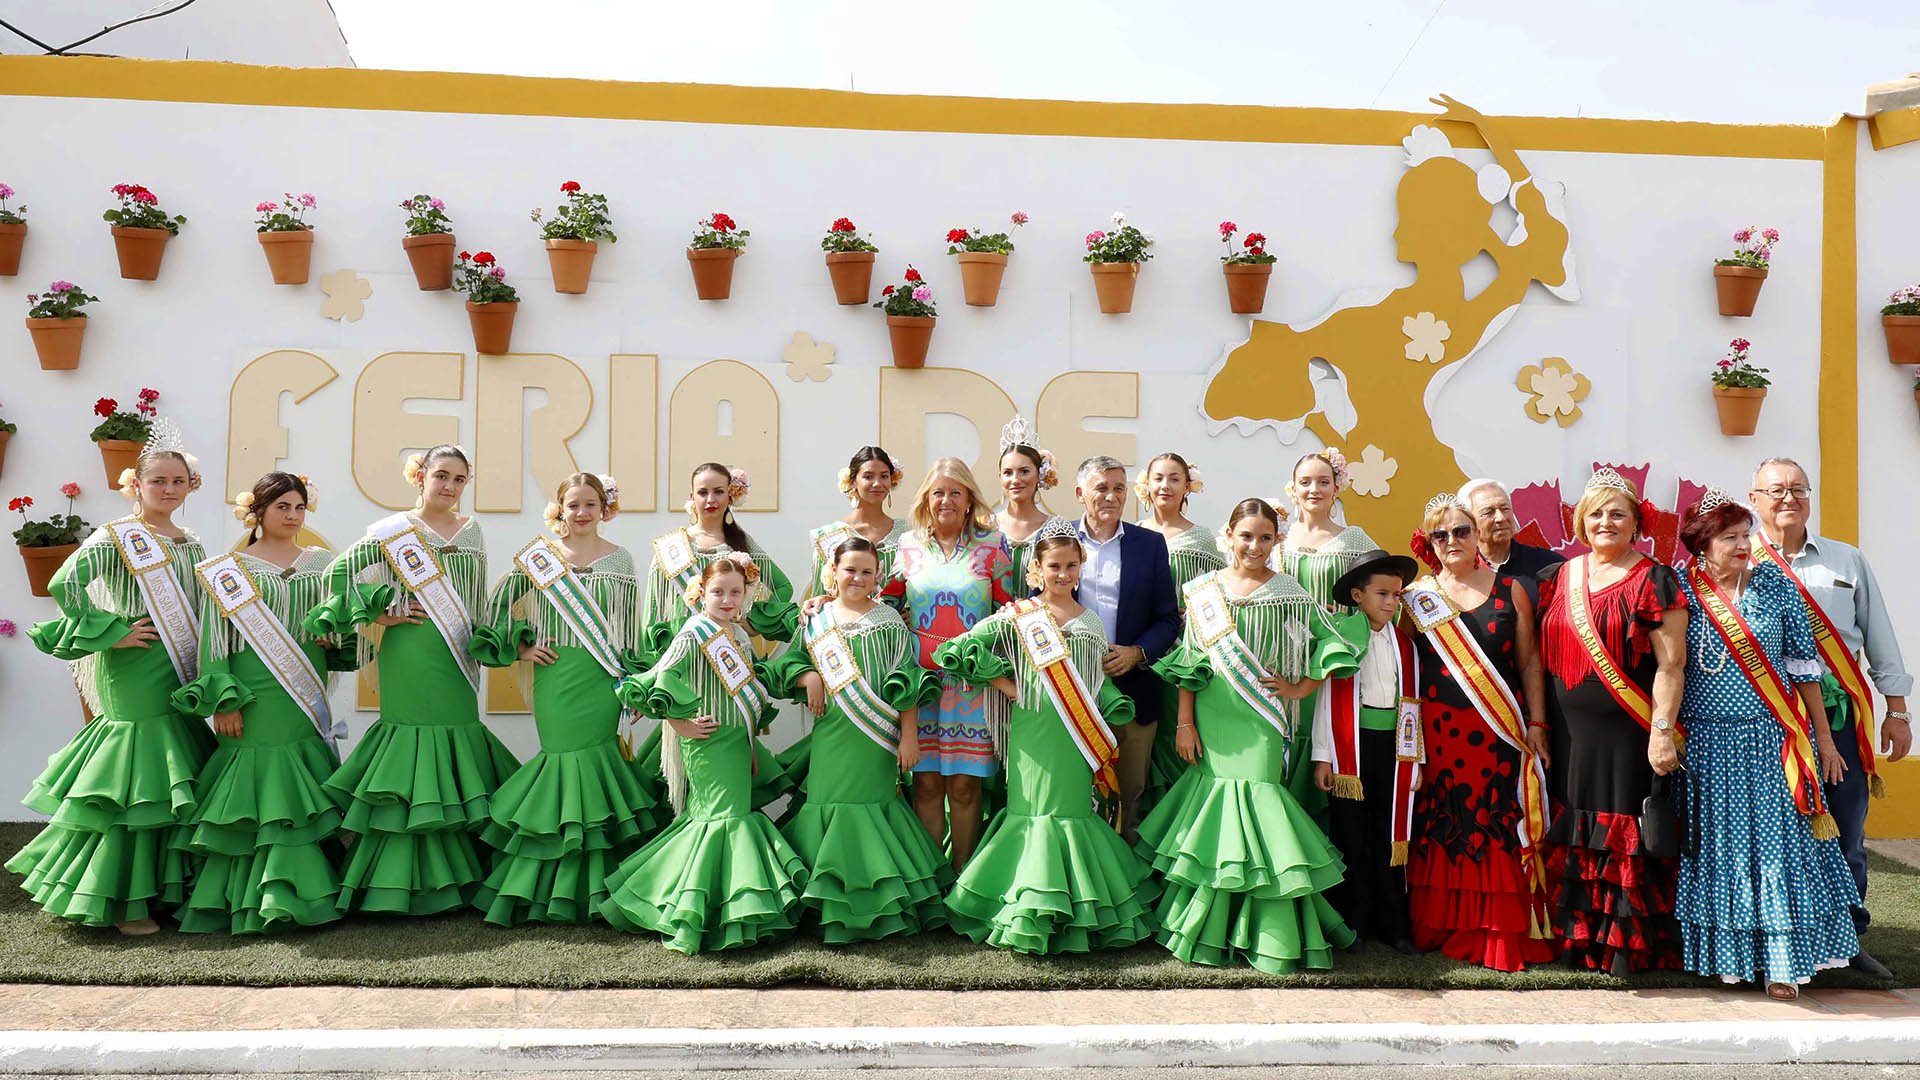 Desde el Ayuntamiento animan a disfrutar “con alegría y responsabilidad” las fiestas de San Pedro Alcántara